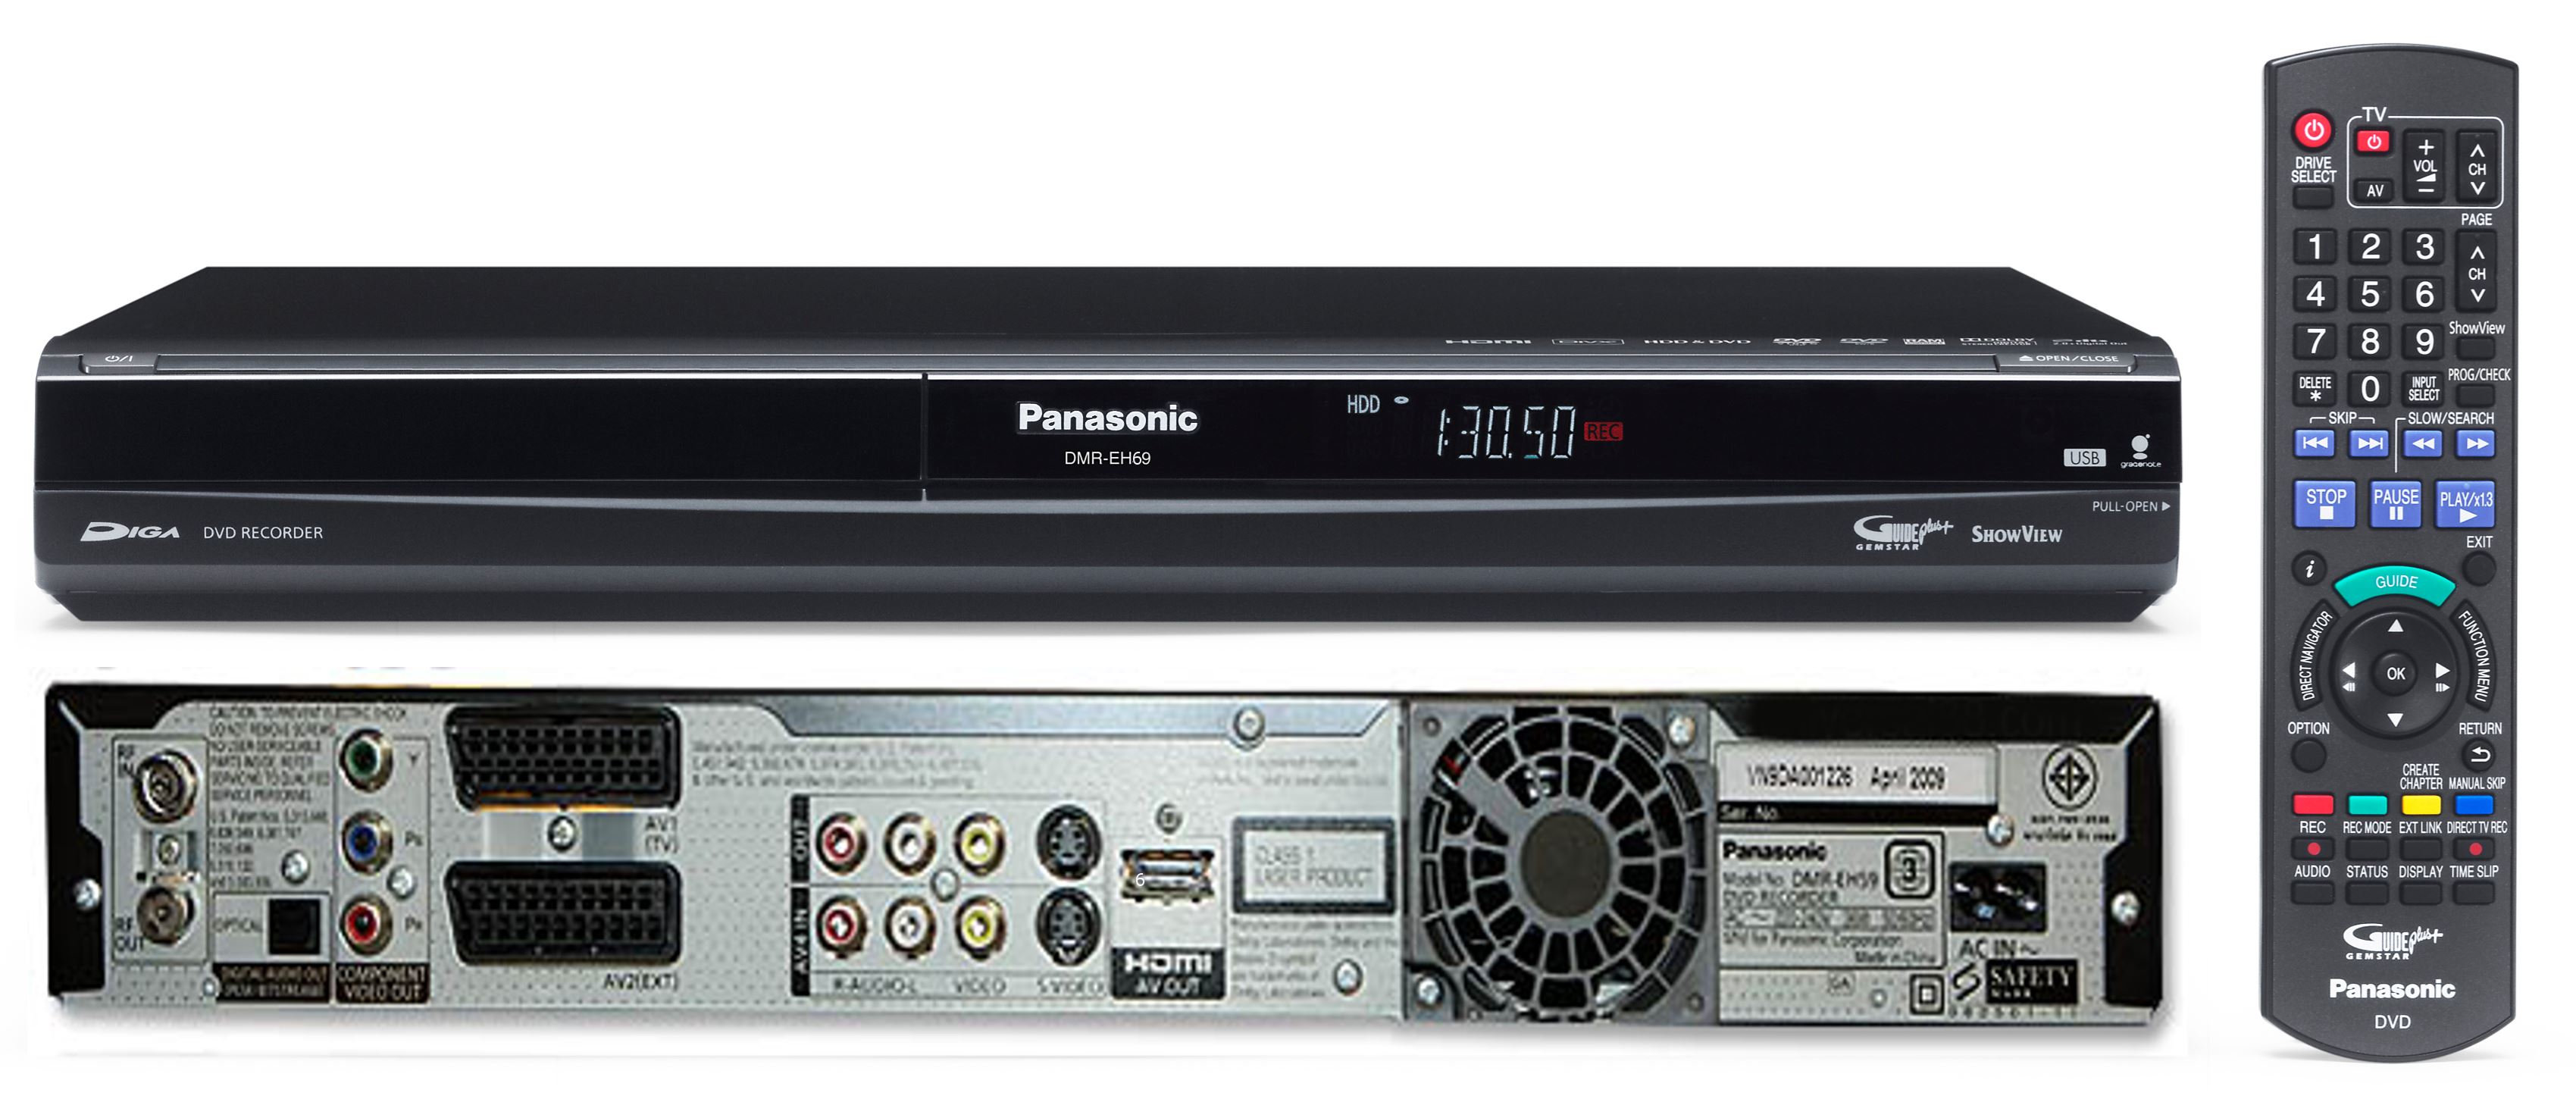 Panasonic DMR-EH69 320GB Hard Drive DVD Recorder PAL NTSC